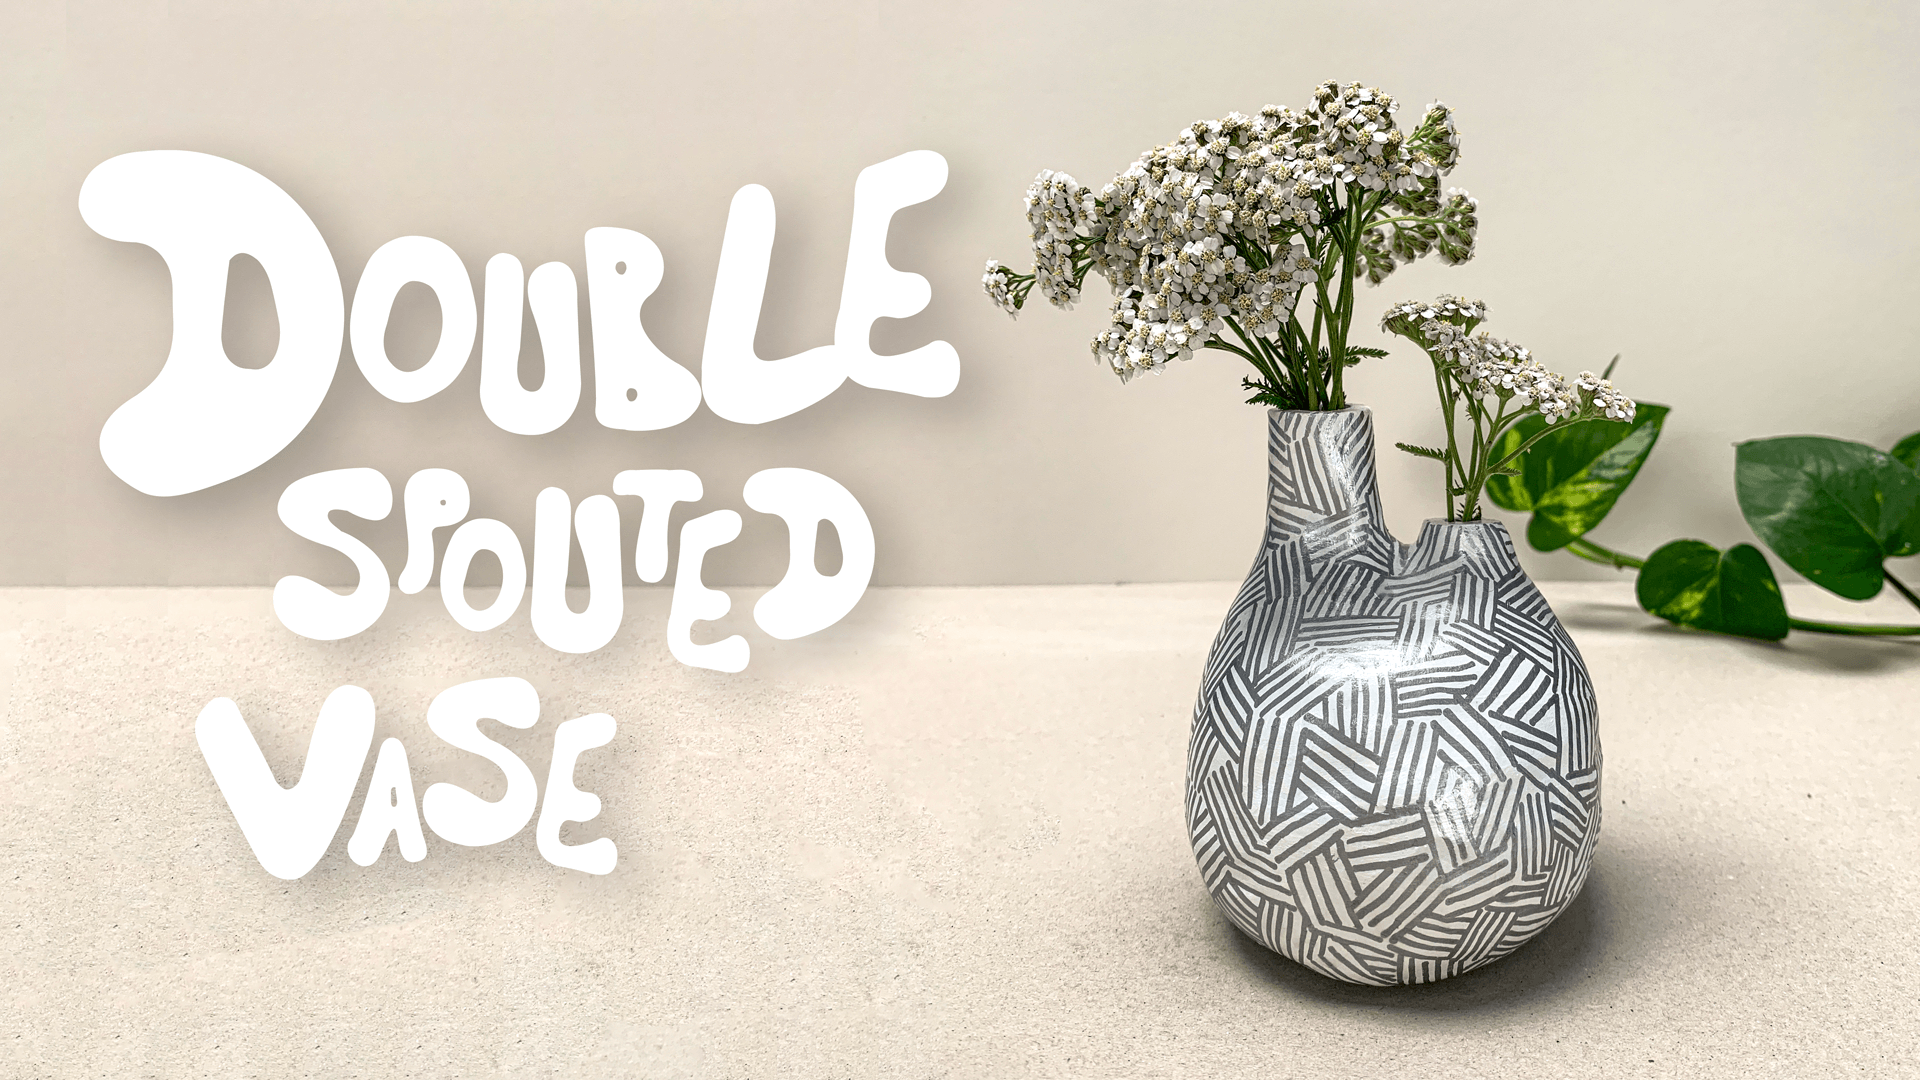 Double Spouted Vase - Live Workshop Recording